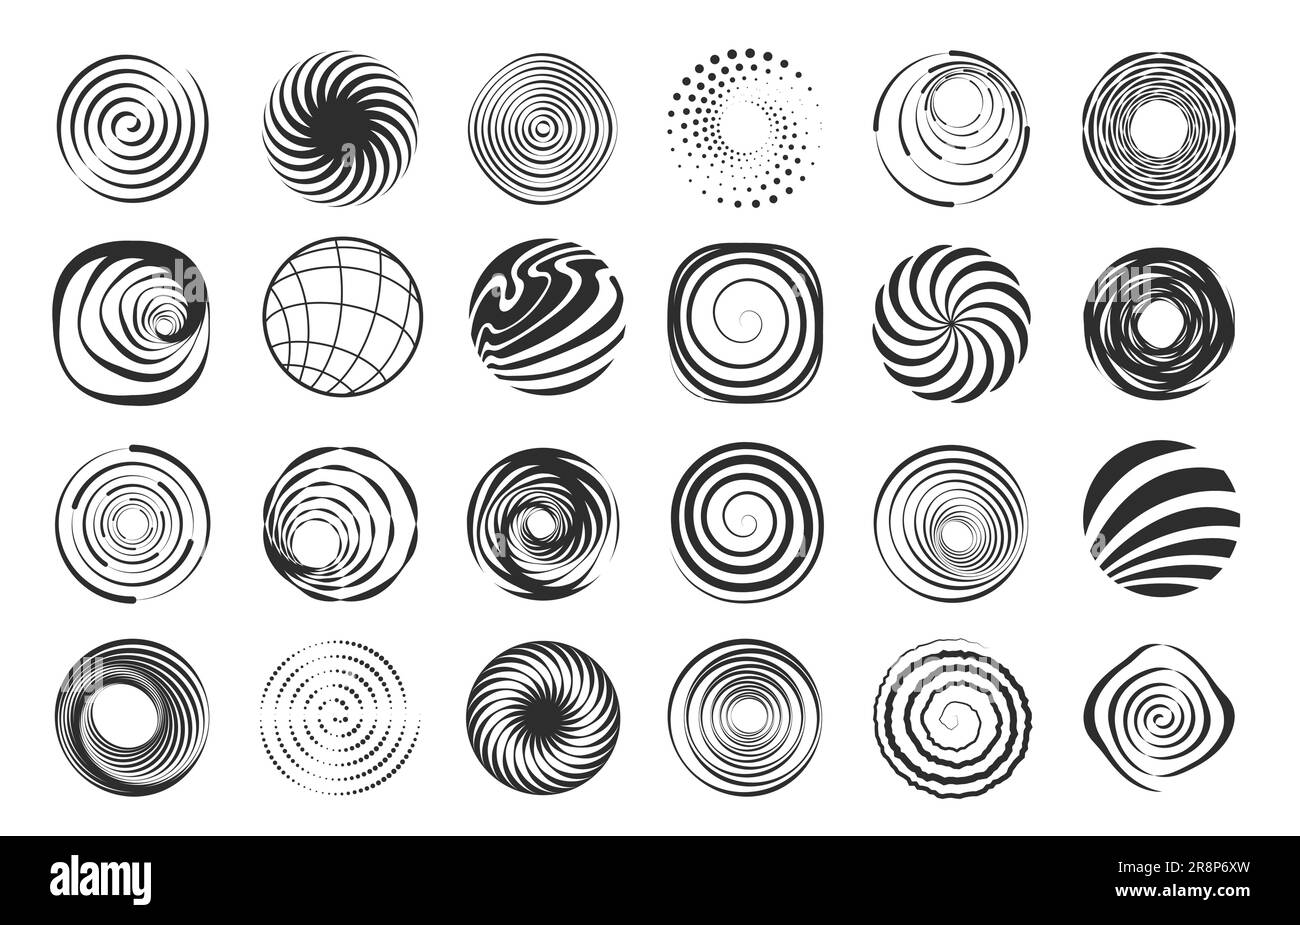 Formes en spirale. Figurines géométriques abstraites de tourbillon, éléments abstraits modernes de spirale de cercle ondulé, éléments de conception de bordure noire de mouvement. Ensemble de vecteurs de la désaturation Illustration de Vecteur